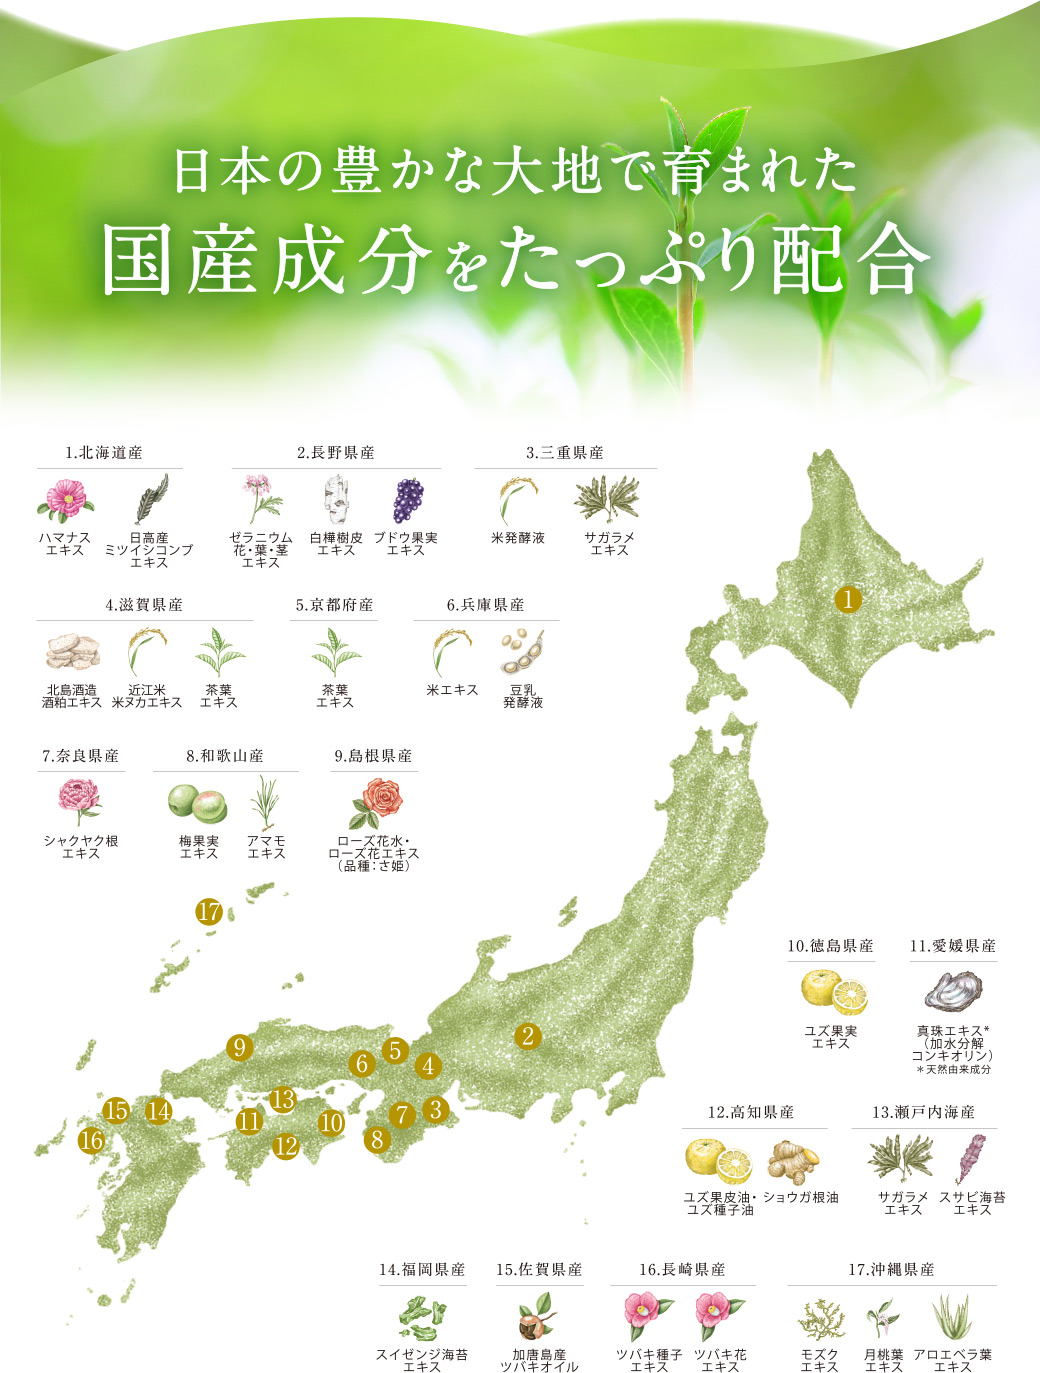 日本の豊かな大地で育まれた国産成分をたっぷり配合